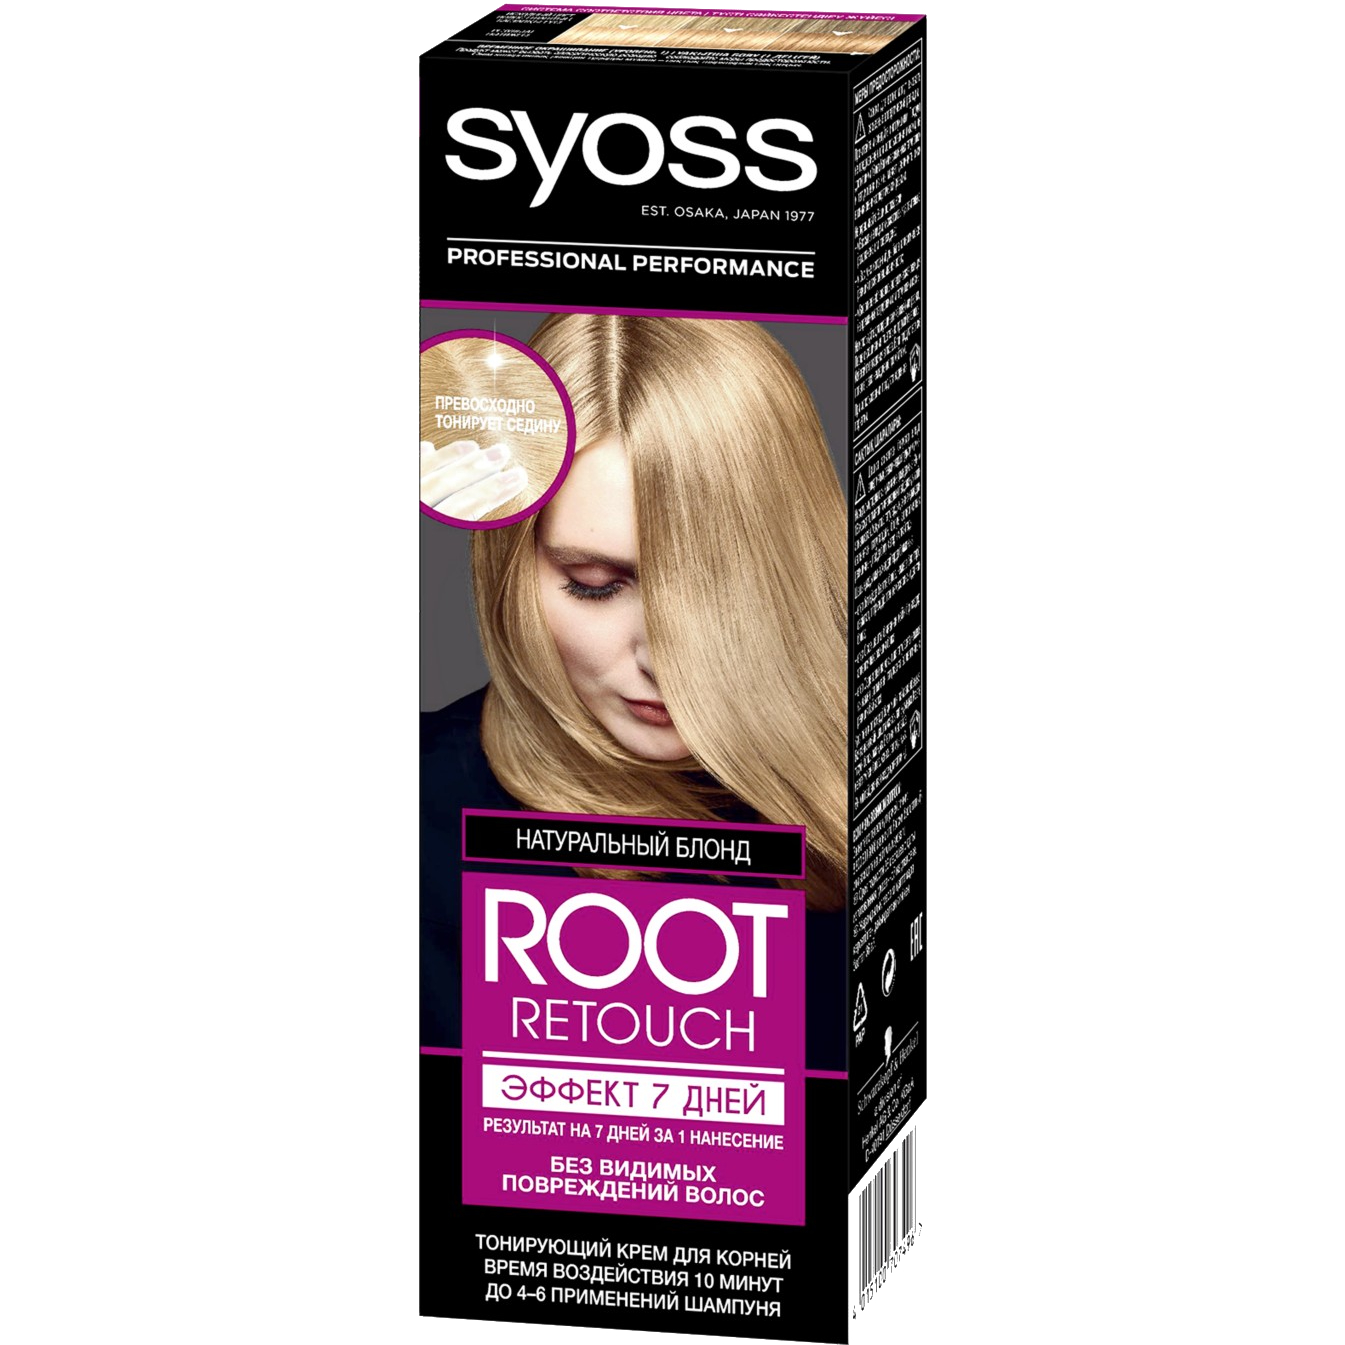 Крем для волос Syoss Root Retoucher тонирующий Эффект 7 дней оттенок 8.0 Натуральный Блонд, 60 мл bb крем тонирующий уход spf15 тон 52 beige 30мл